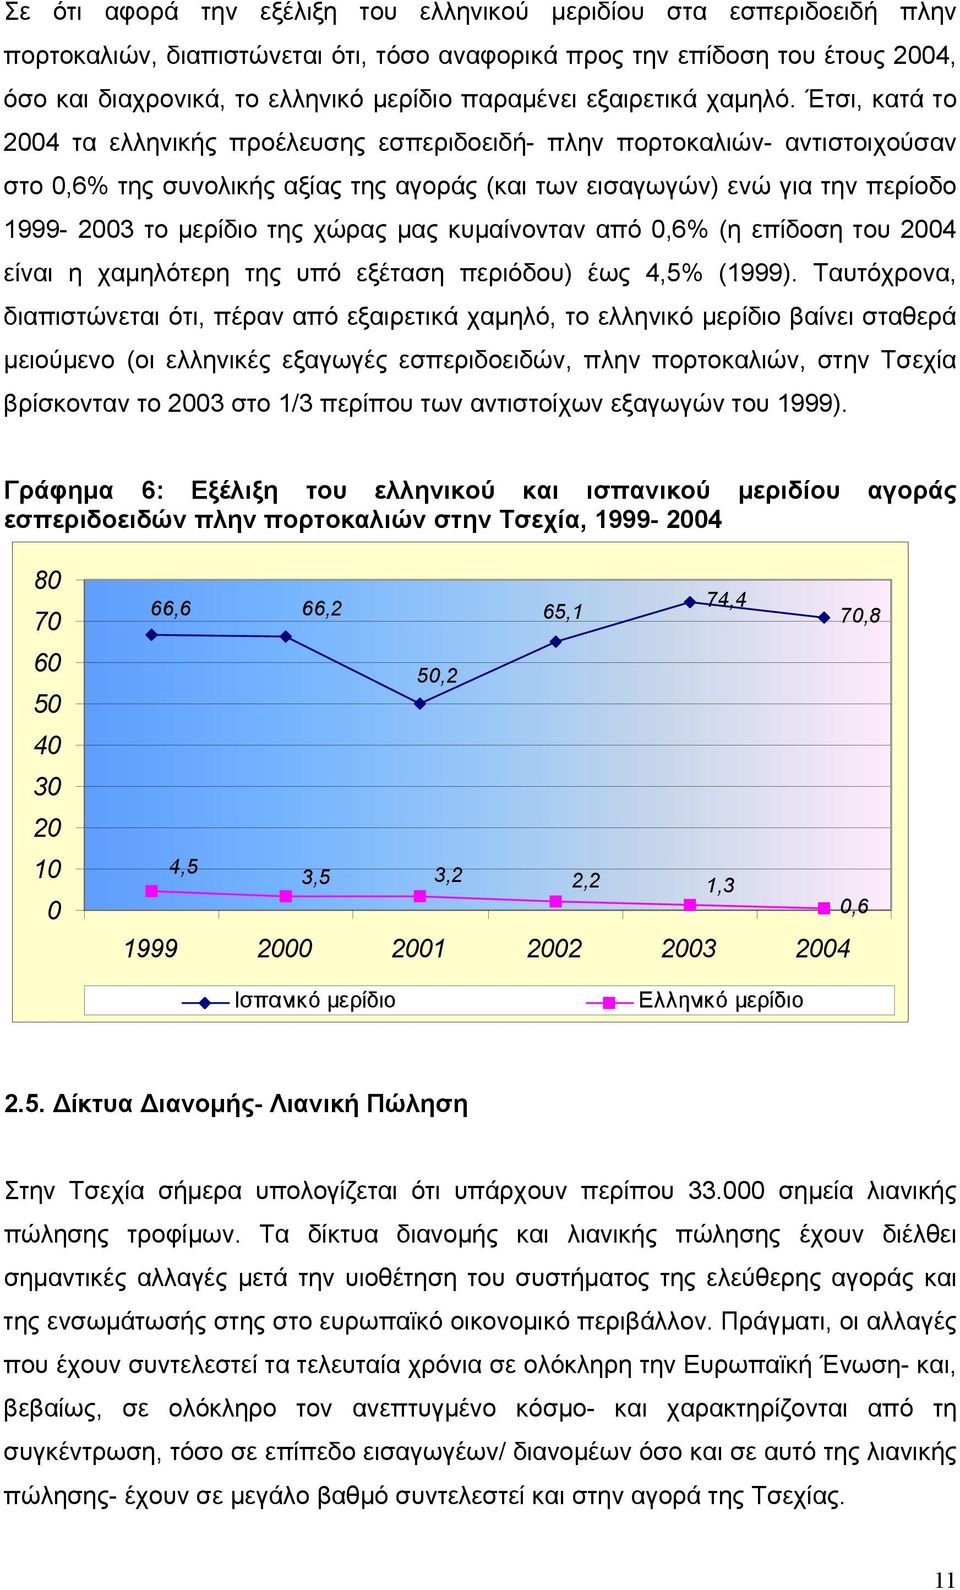 Έτσι, κατά το 2004 τα ελληνικής προέλευσης εσπεριδοειδή- πλην πορτοκαλιών- αντιστοιχούσαν στο 0,6% της συνολικής αξίας της αγοράς (και των εισαγωγών) ενώ για την περίοδο 1999-2003 το μερίδιο της